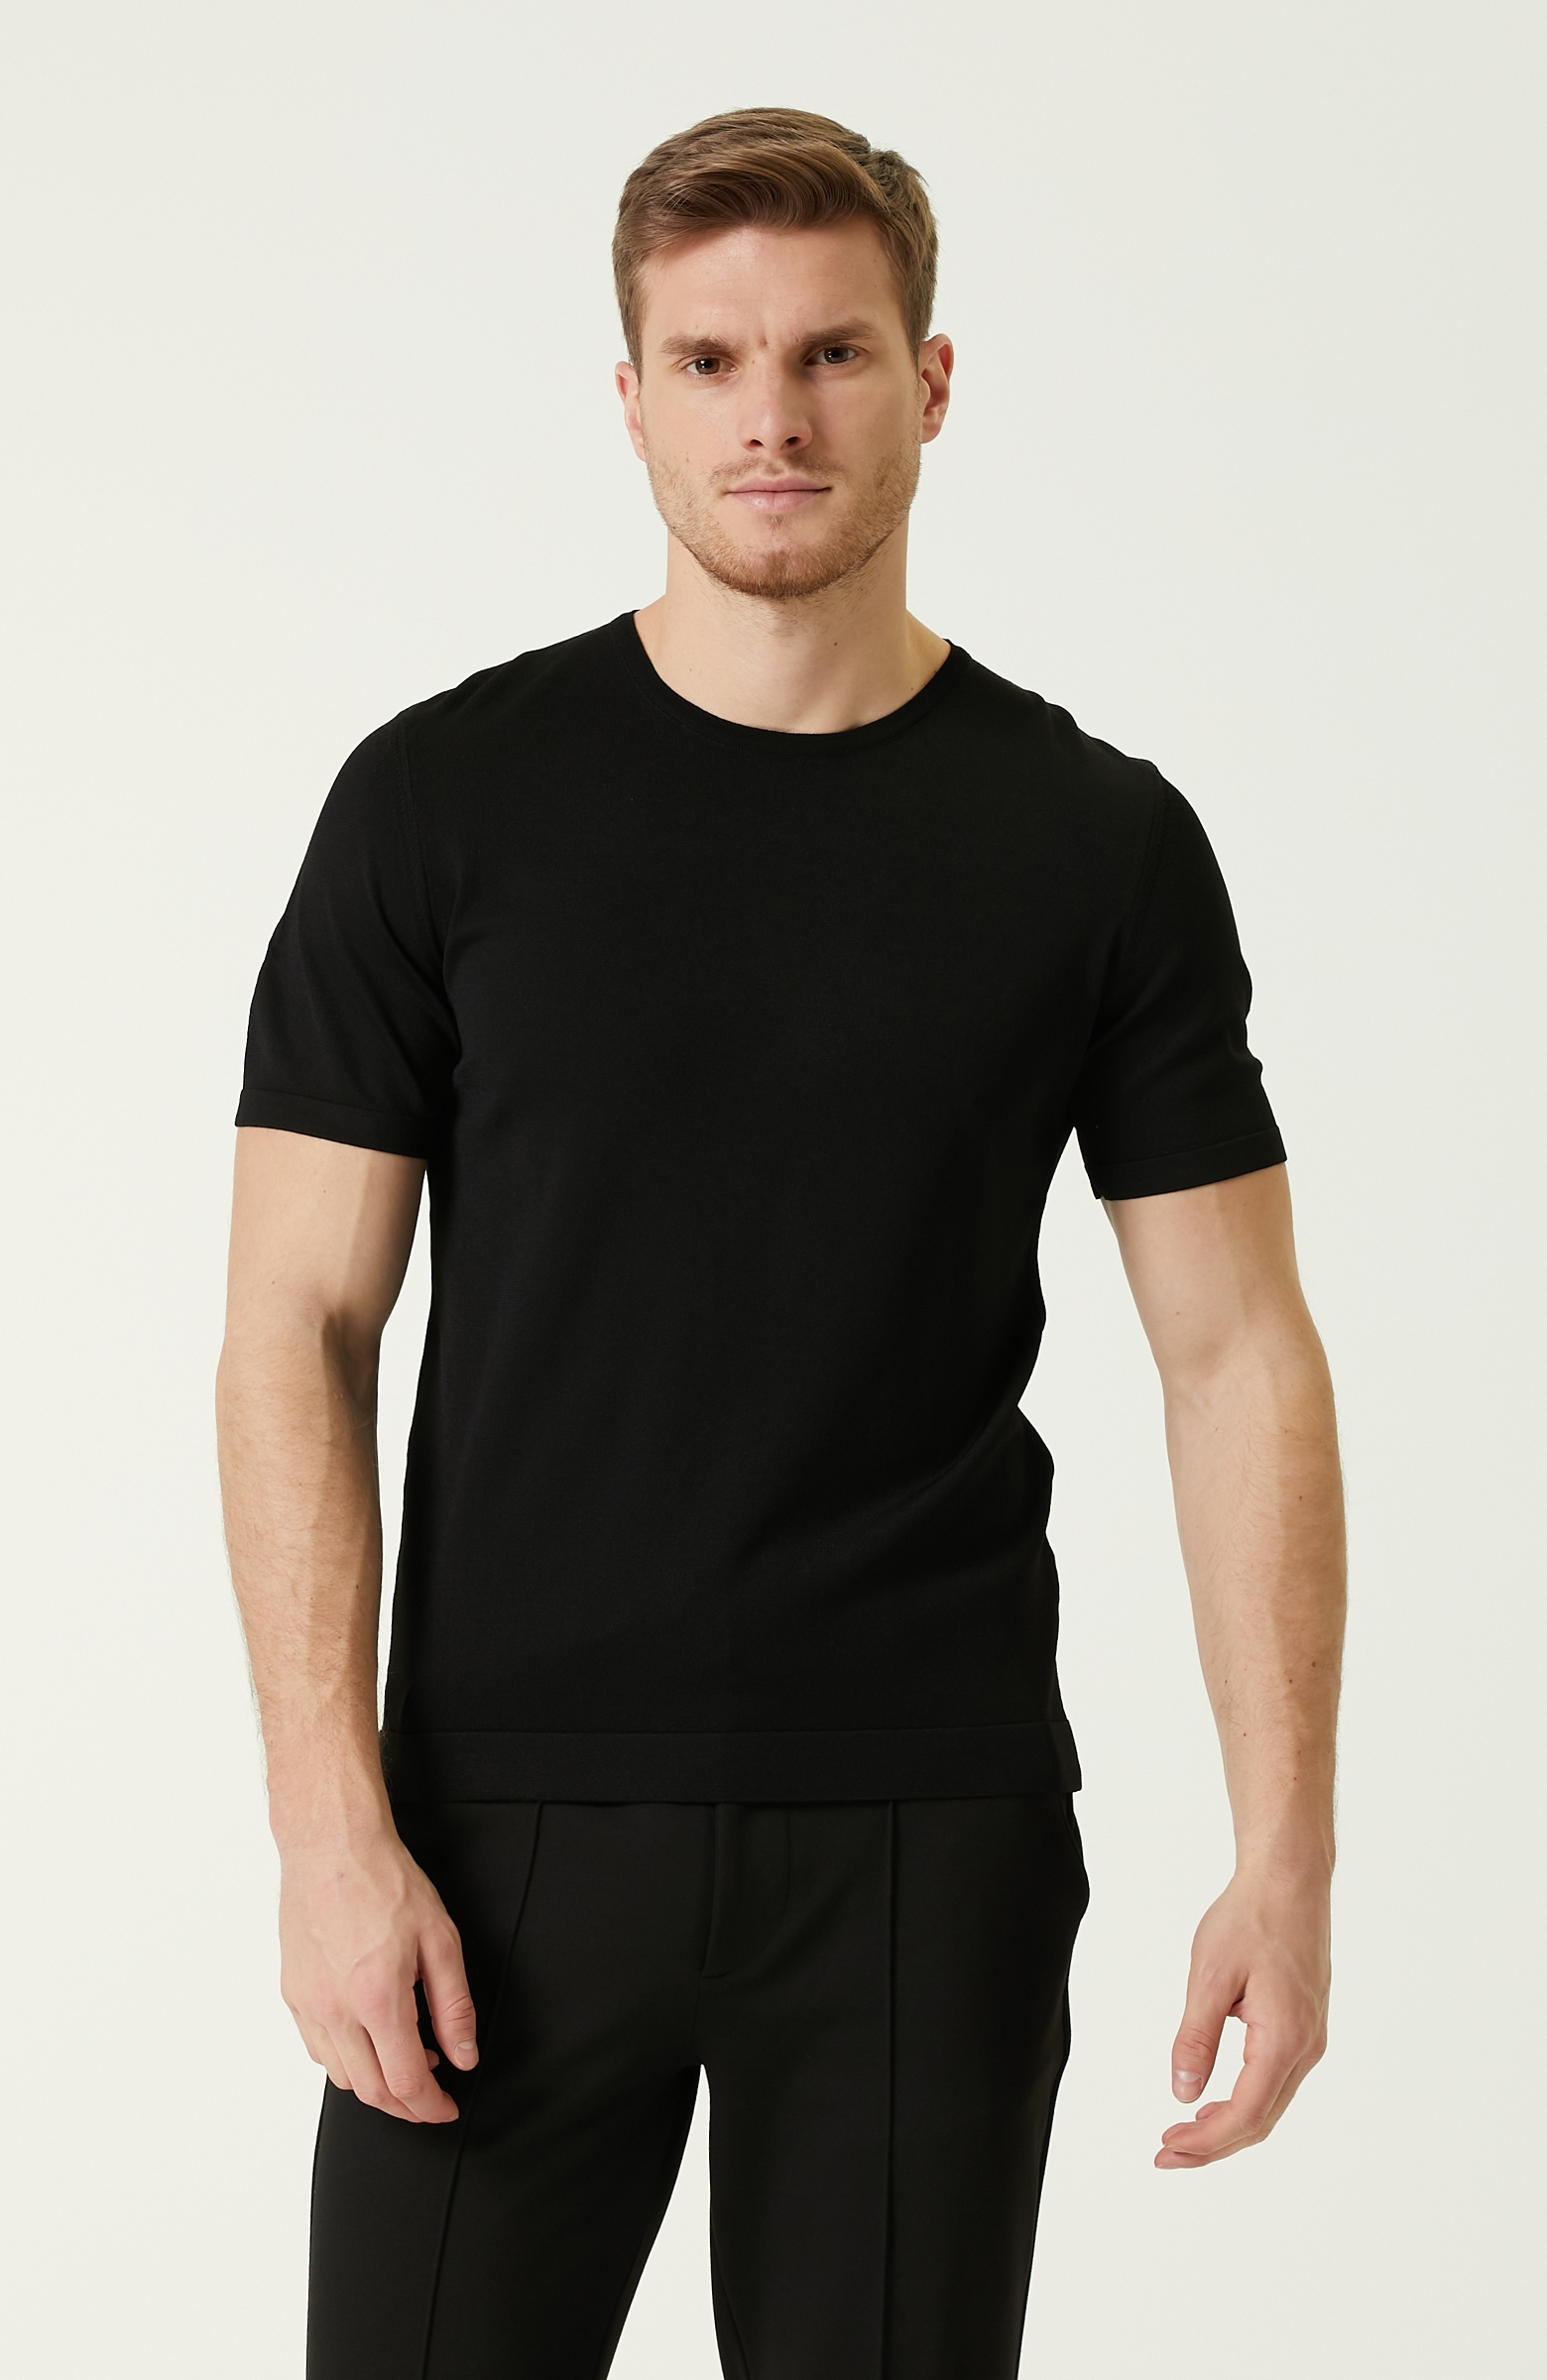 Siyah Basic T-shirt